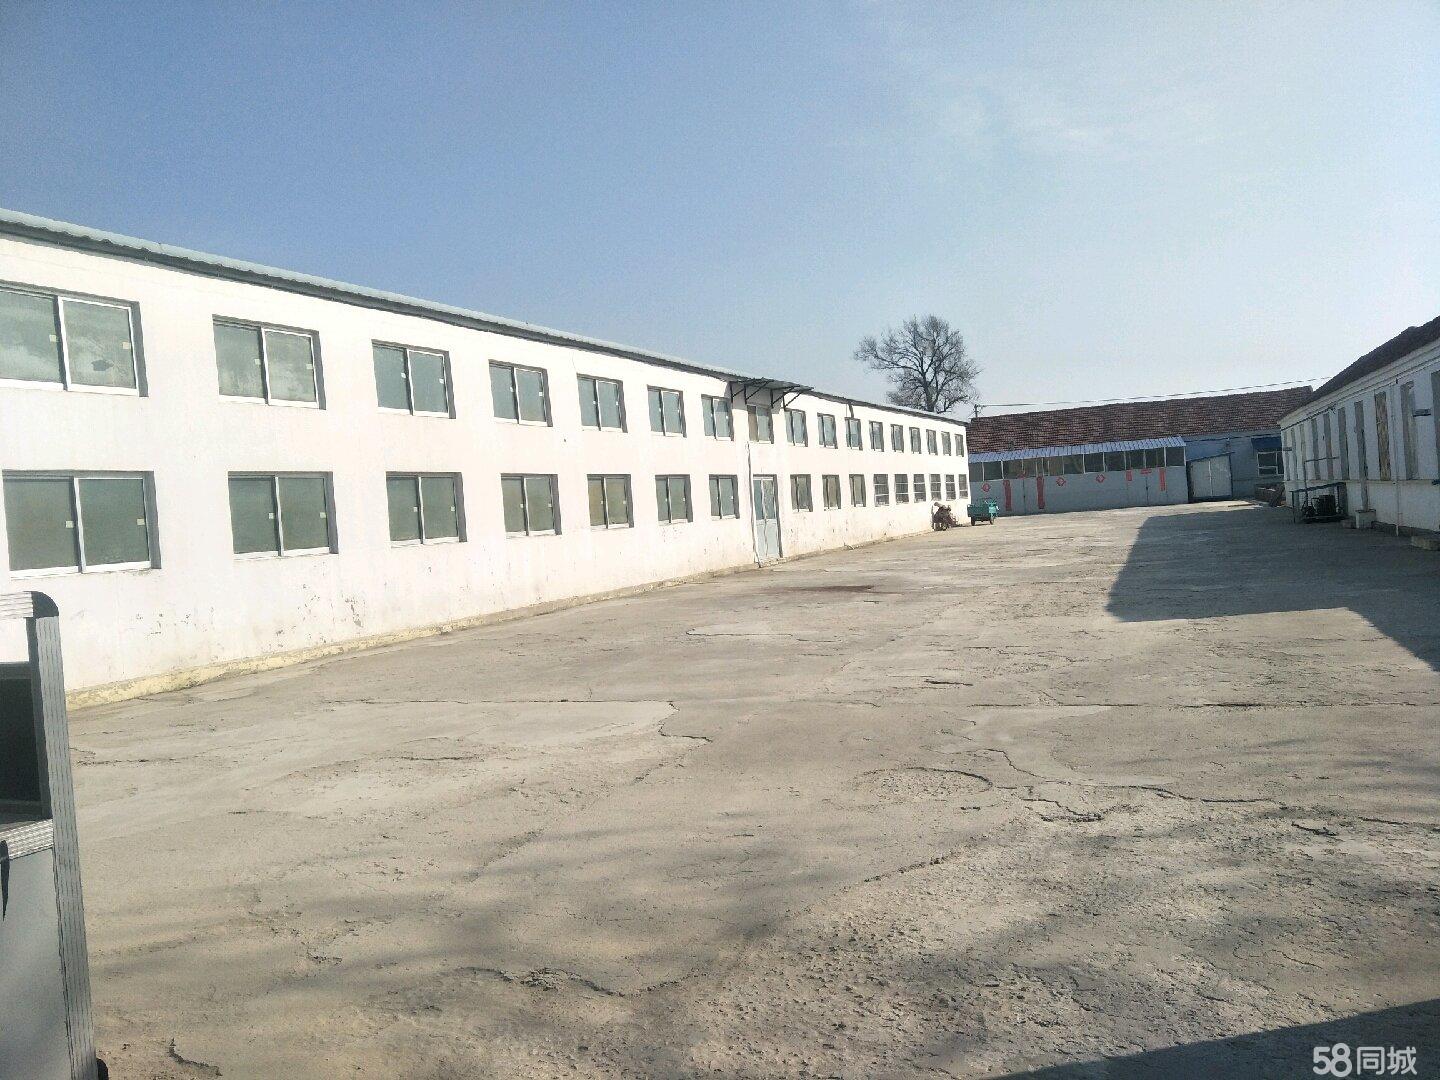 (出租) 汪疃镇780平方出租 厂房 780平米